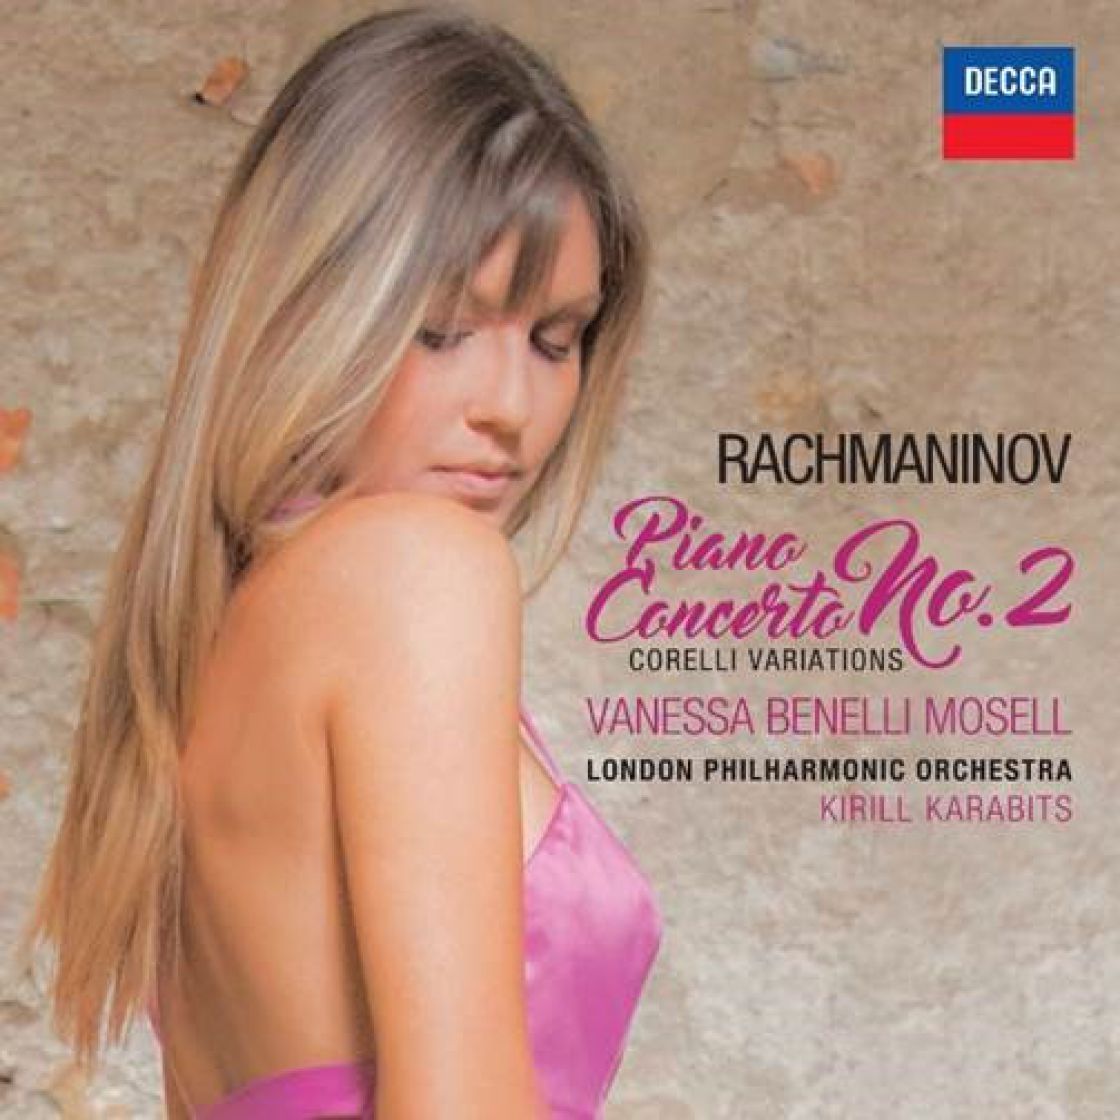 Vanessa Benelli Mosell - Rachmaninov